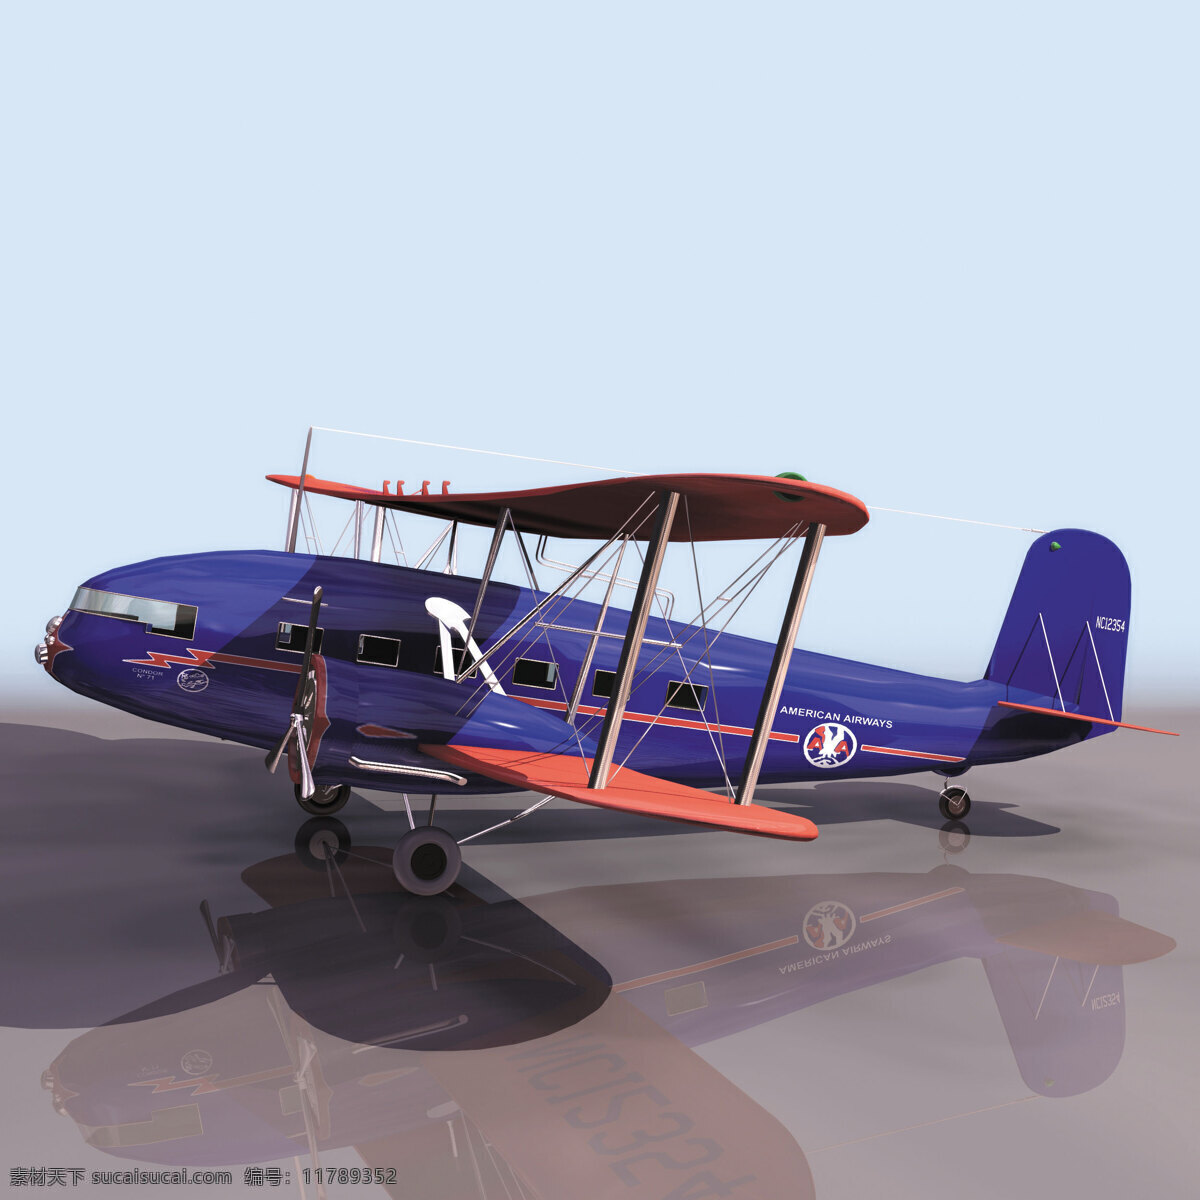 飞机模型 curtiss 民用飞机 3d模型素材 电器模型